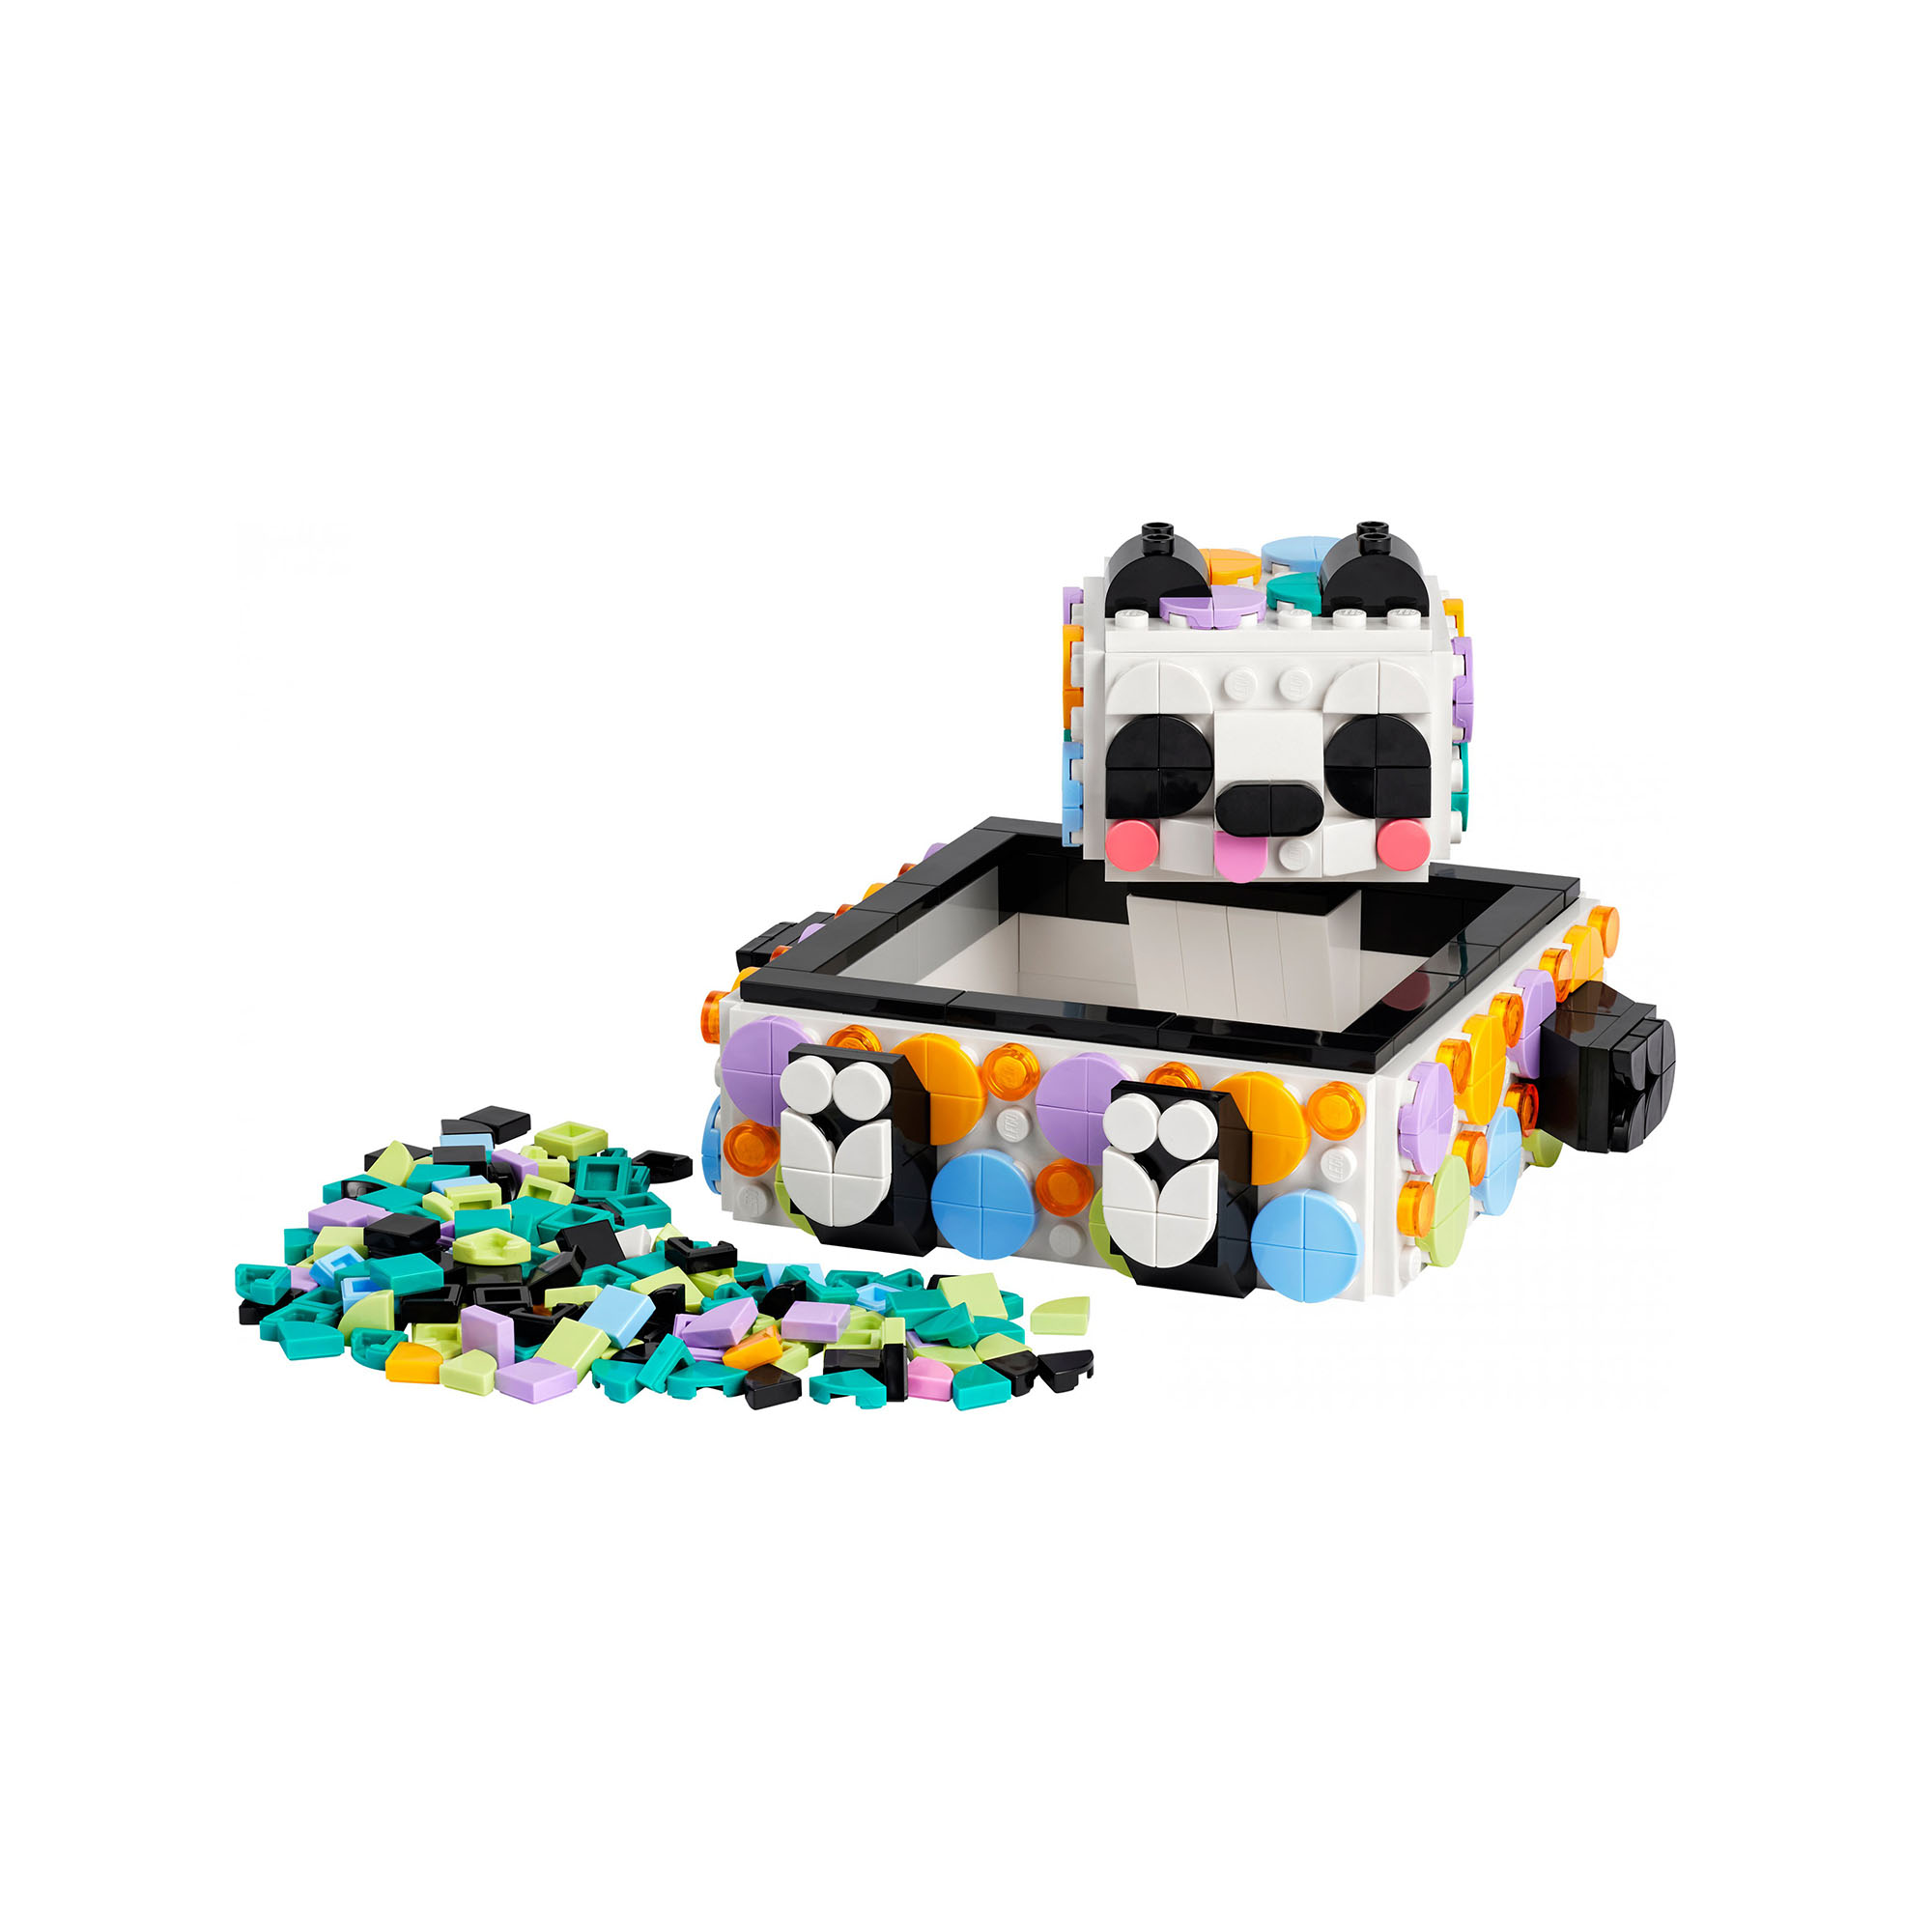 LEGO DOTS Il Simpatico Panda Portaoggetti, Set Scatola Fai da Te con Panda Gioca 41959, , large